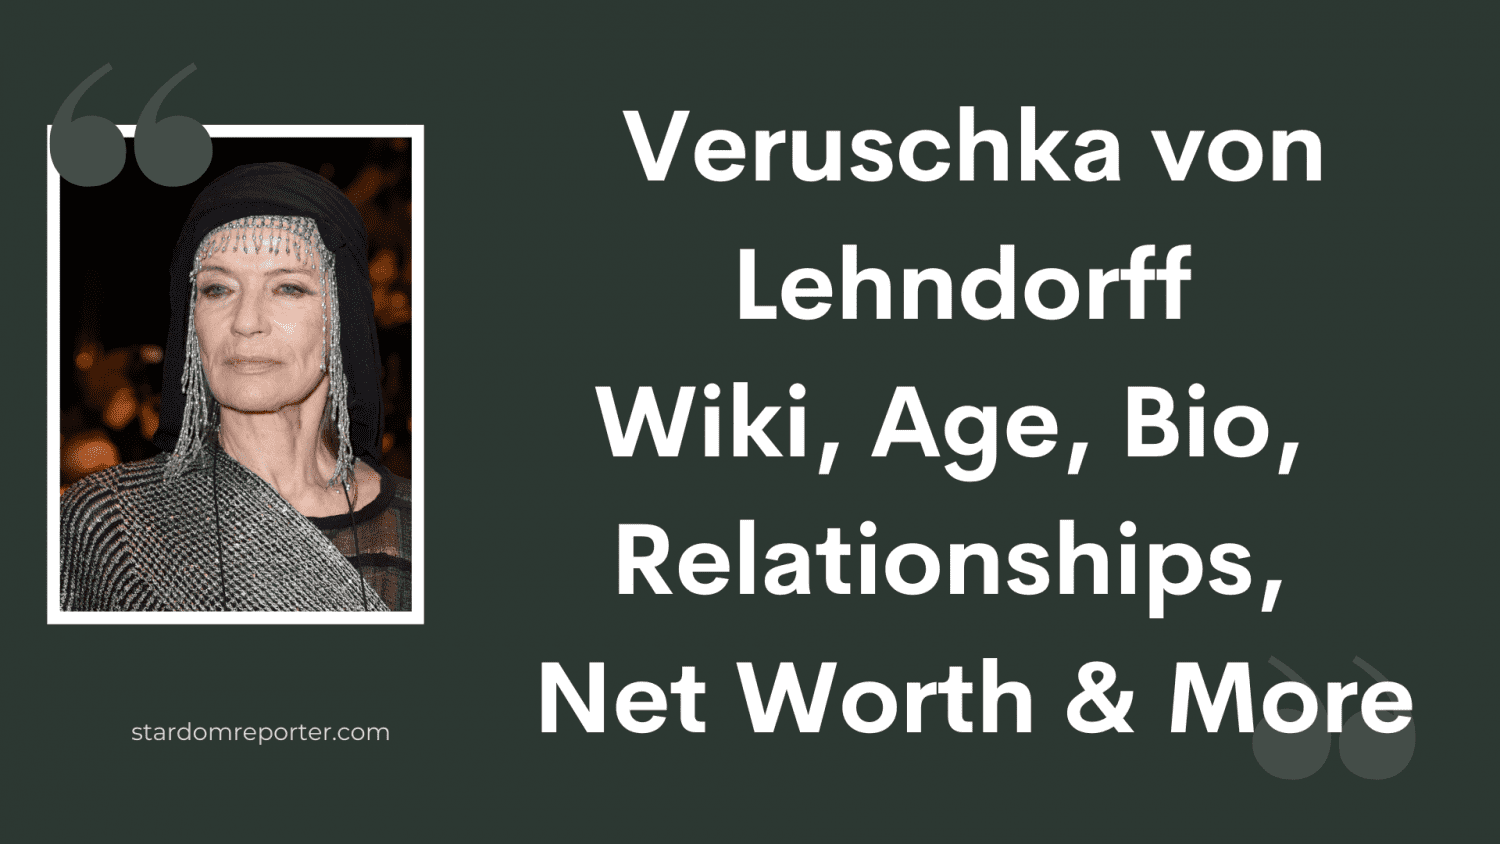 Veruschka von Lehndorff Wiki, Age, Bio, Relationships, Net Worth & More - 9